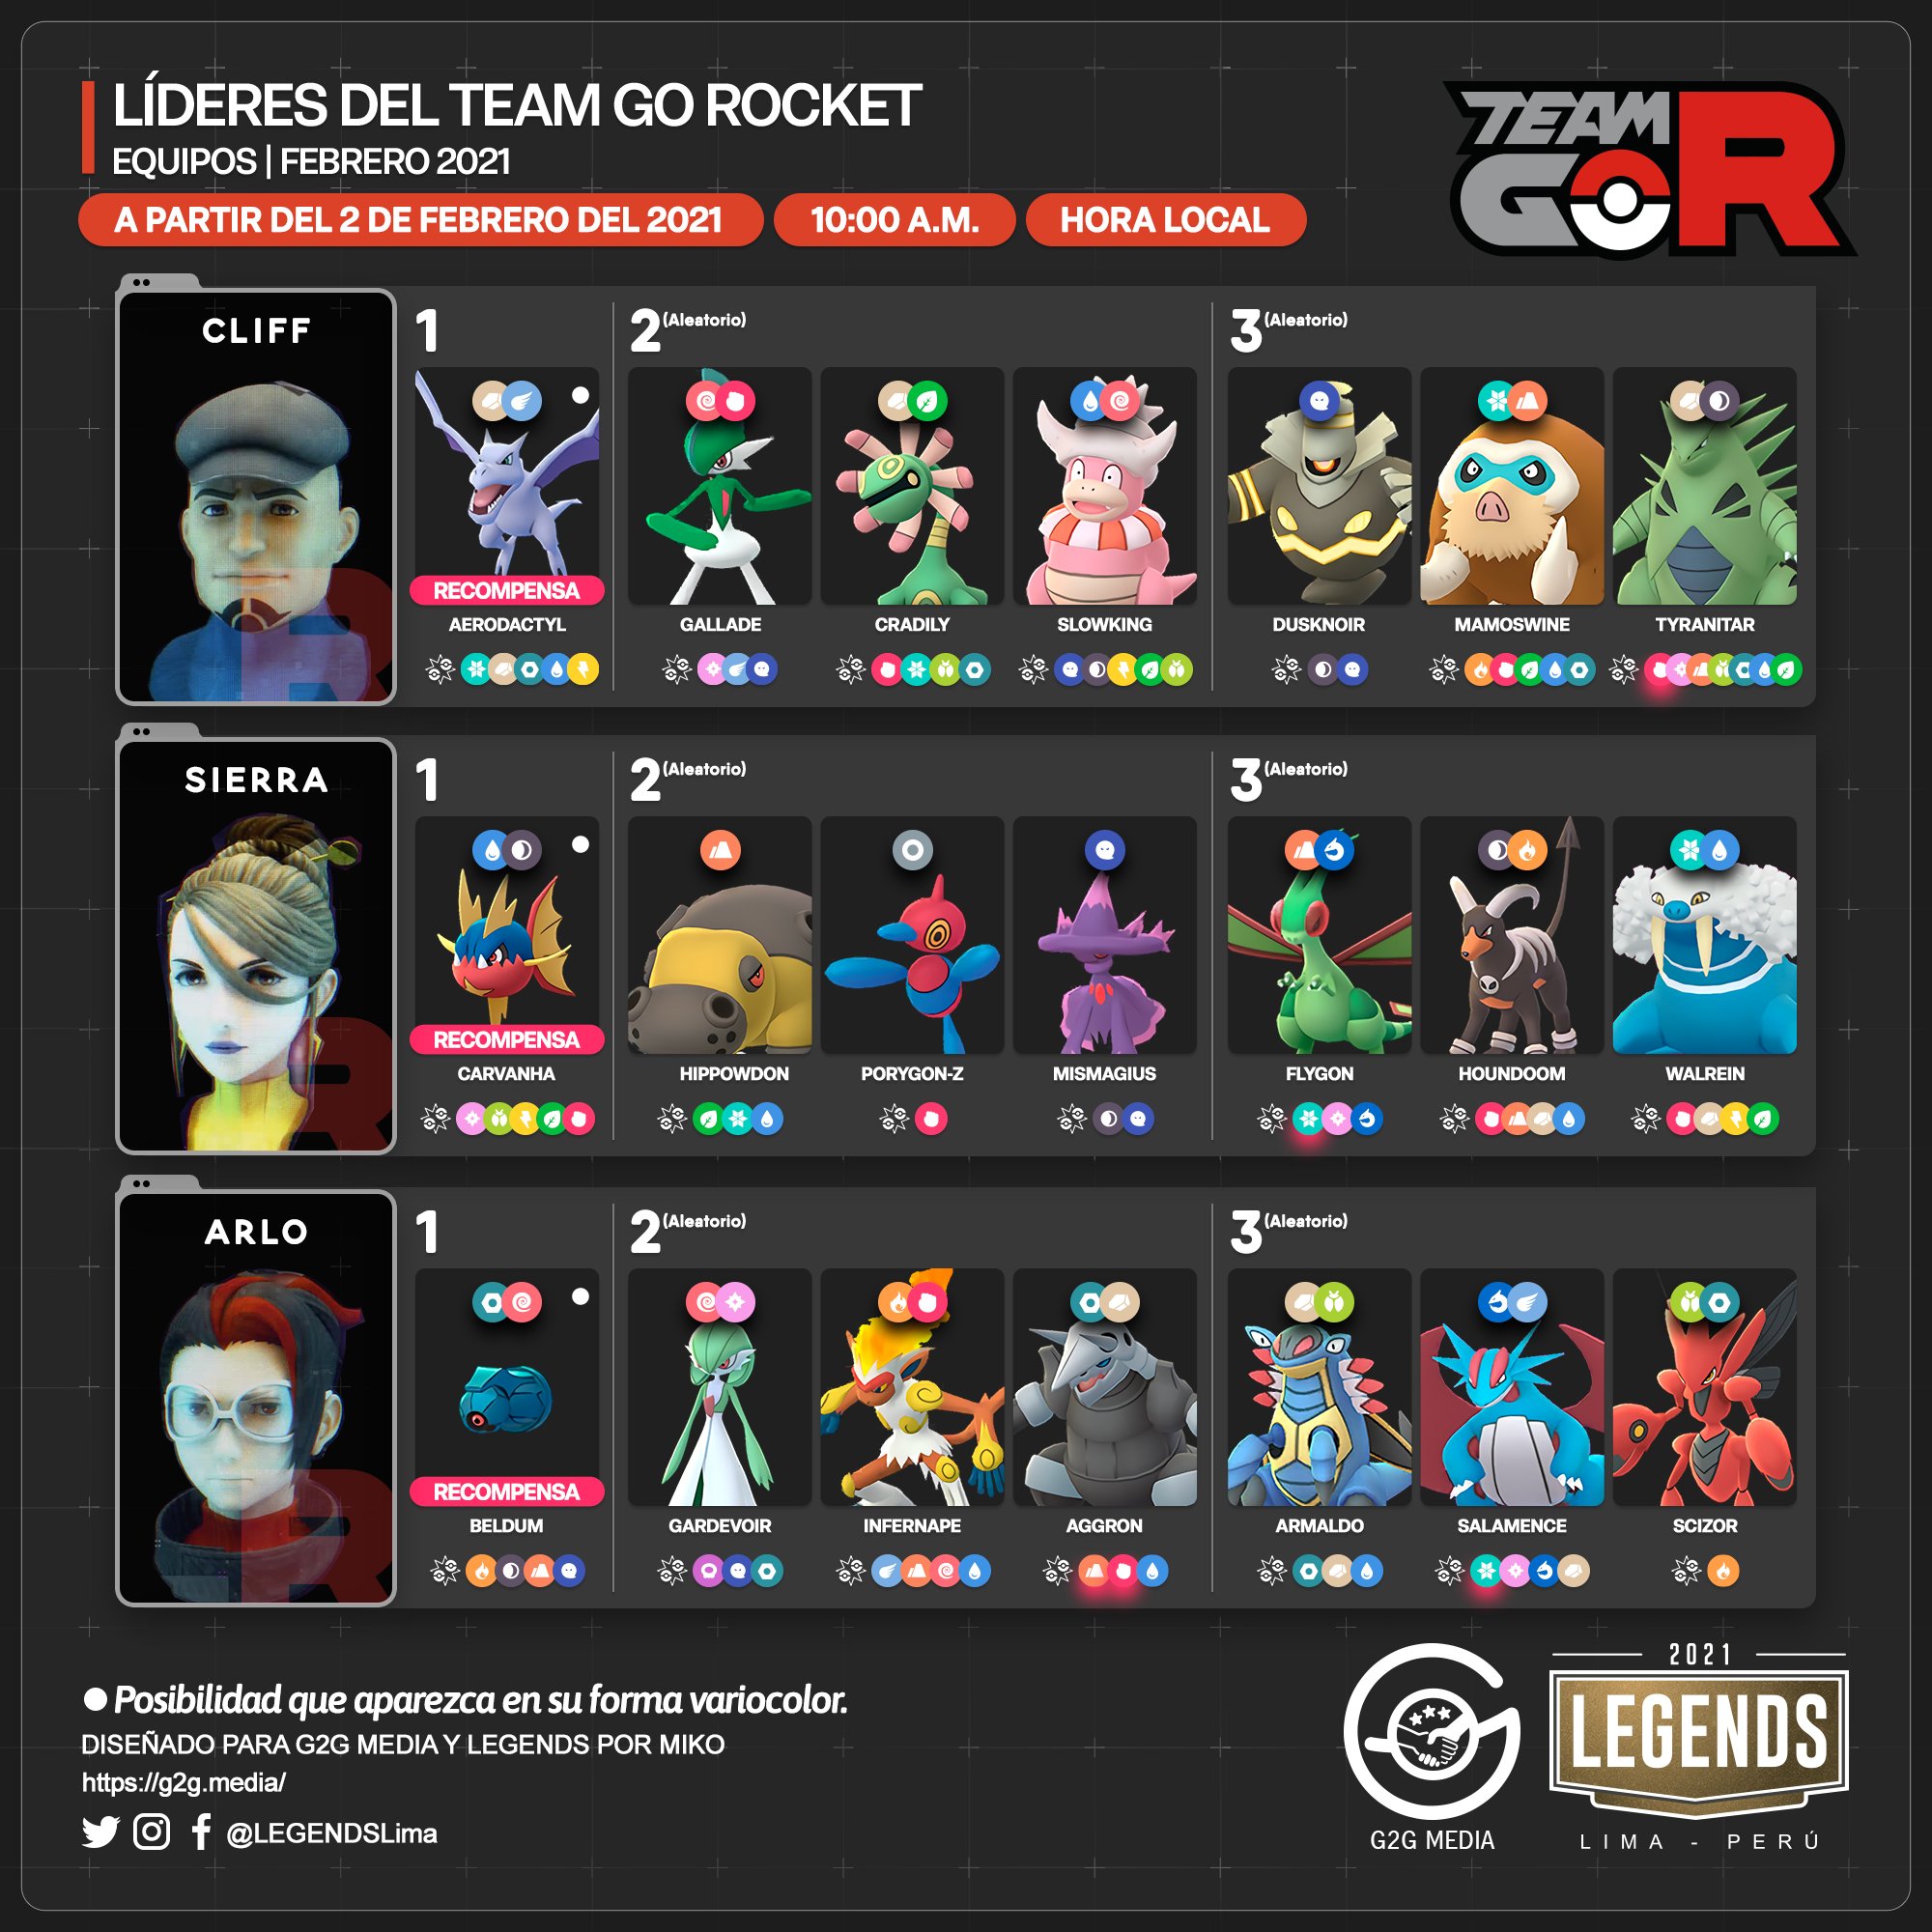 LEGENDS on X: 🇪🇸 Nuevo equipo de los Líderes del #TeamGORocket